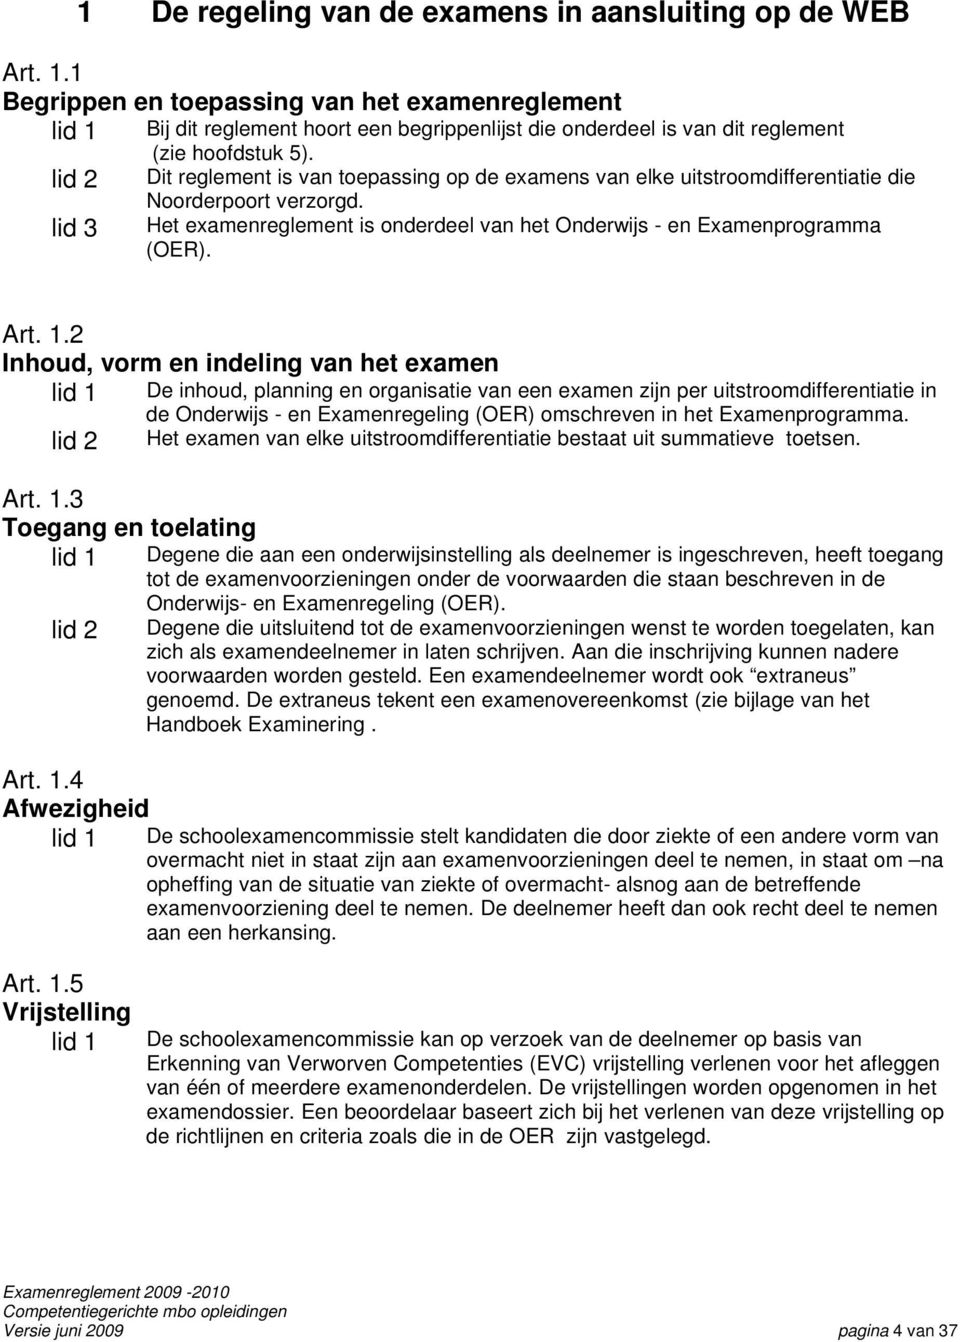 lid 2 Dit reglement is van toepassing op de examens van elke uitstroomdifferentiatie die Noorderpoort verzorgd. lid 3 Het examenreglement is onderdeel van het Onderwijs - en Examenprogramma (OER).